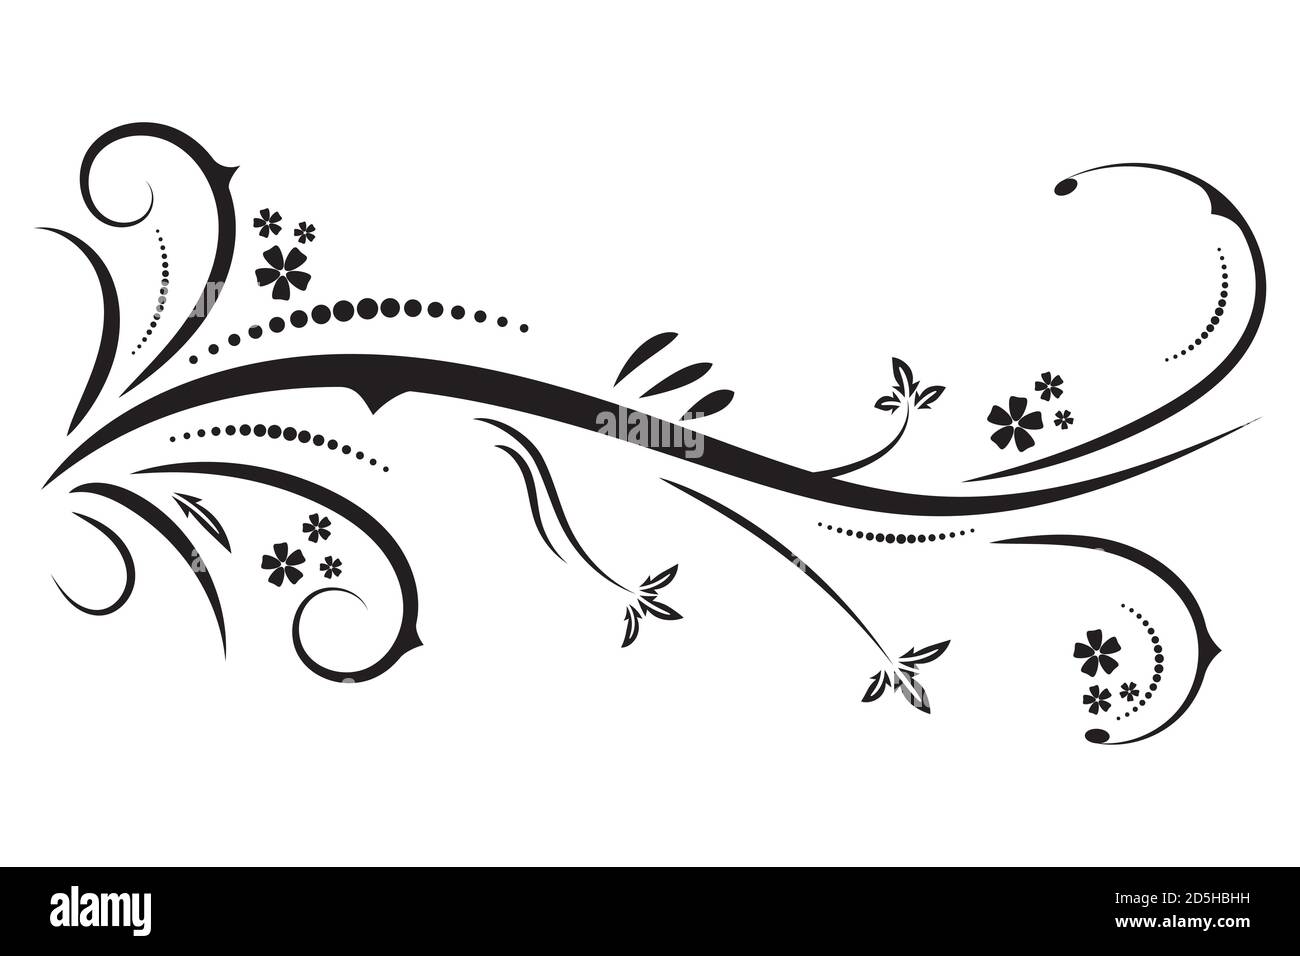 Dessin de graphiques vectoriels avec un élément de motif floral pour le design. Motif floral naturel tribal noir abstrait isolé sur fond blanc Illustration de Vecteur